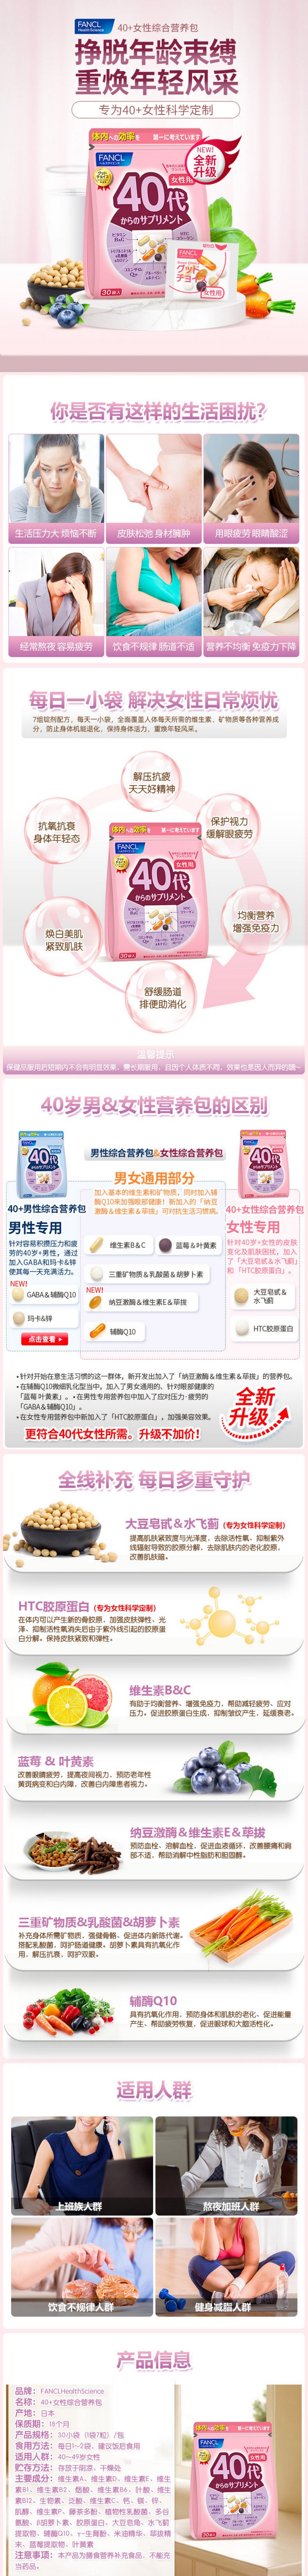 【日本直效郵件】FANCL年代維生素 女性綜合維他命營養素30日份 40歲